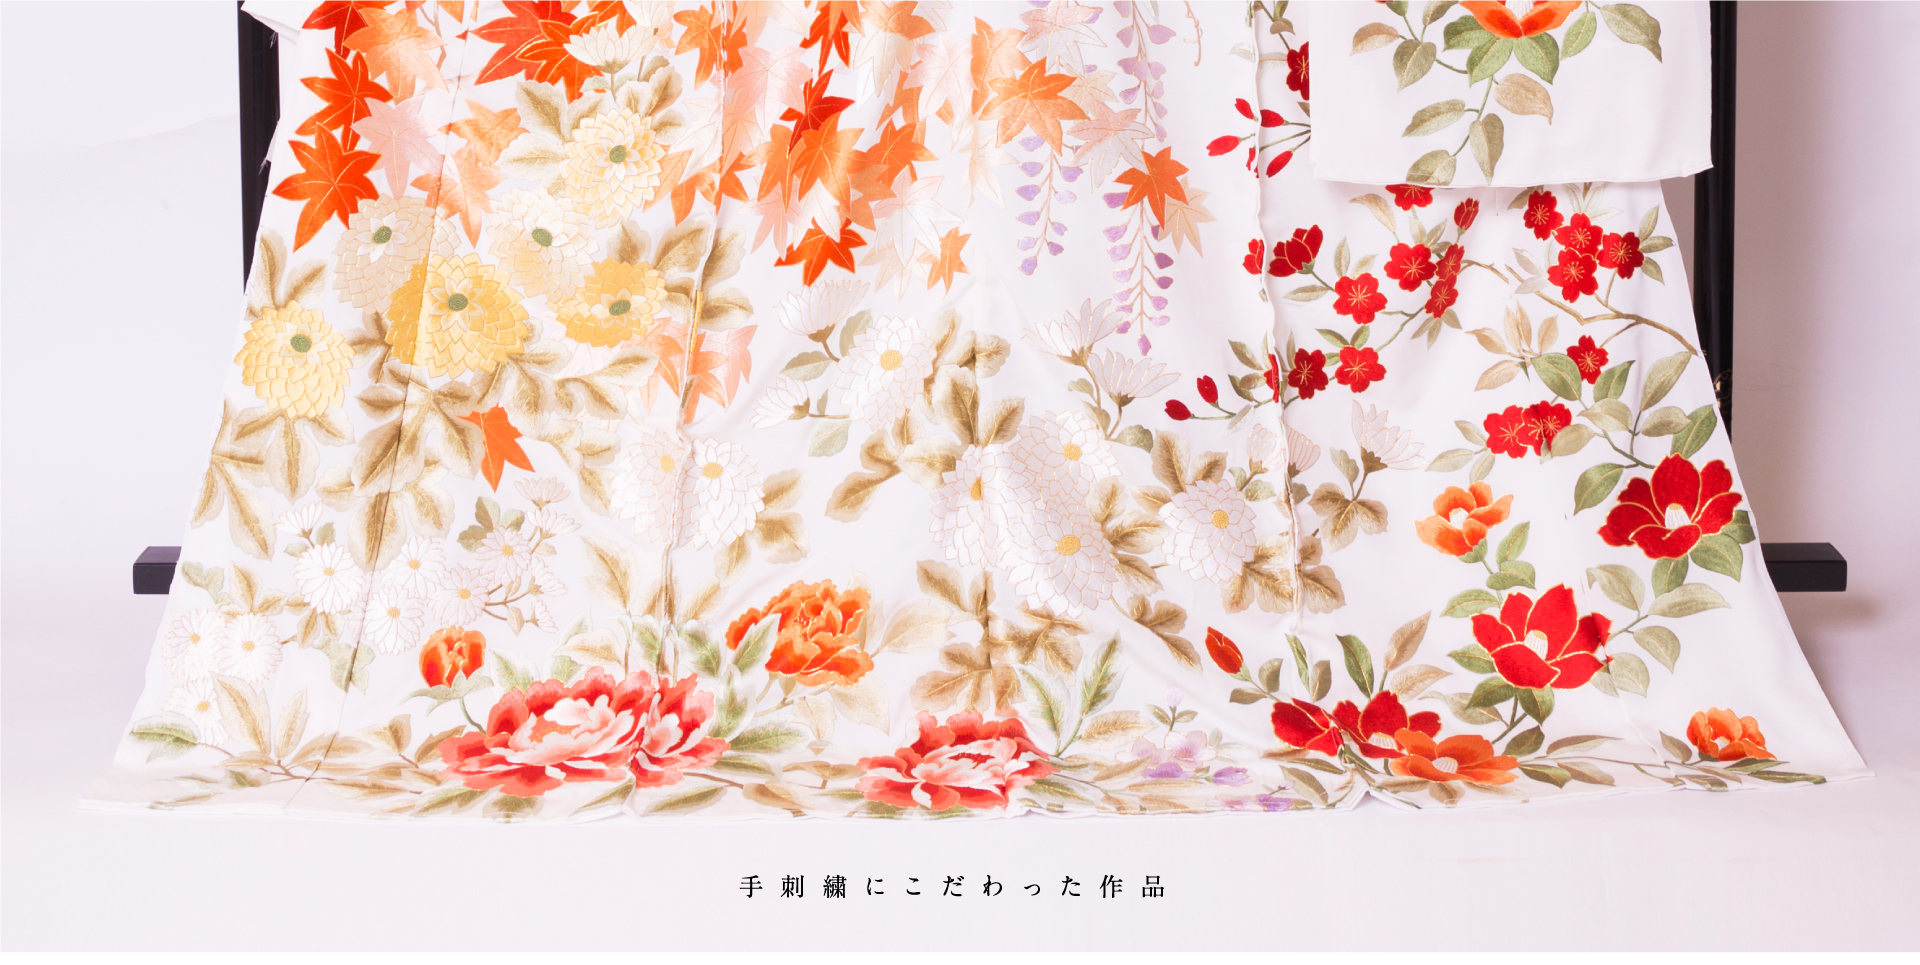 尾峨佐染繍: 京都で伝統的な手刺繍と染を受け継ぐ染呉服製造卸